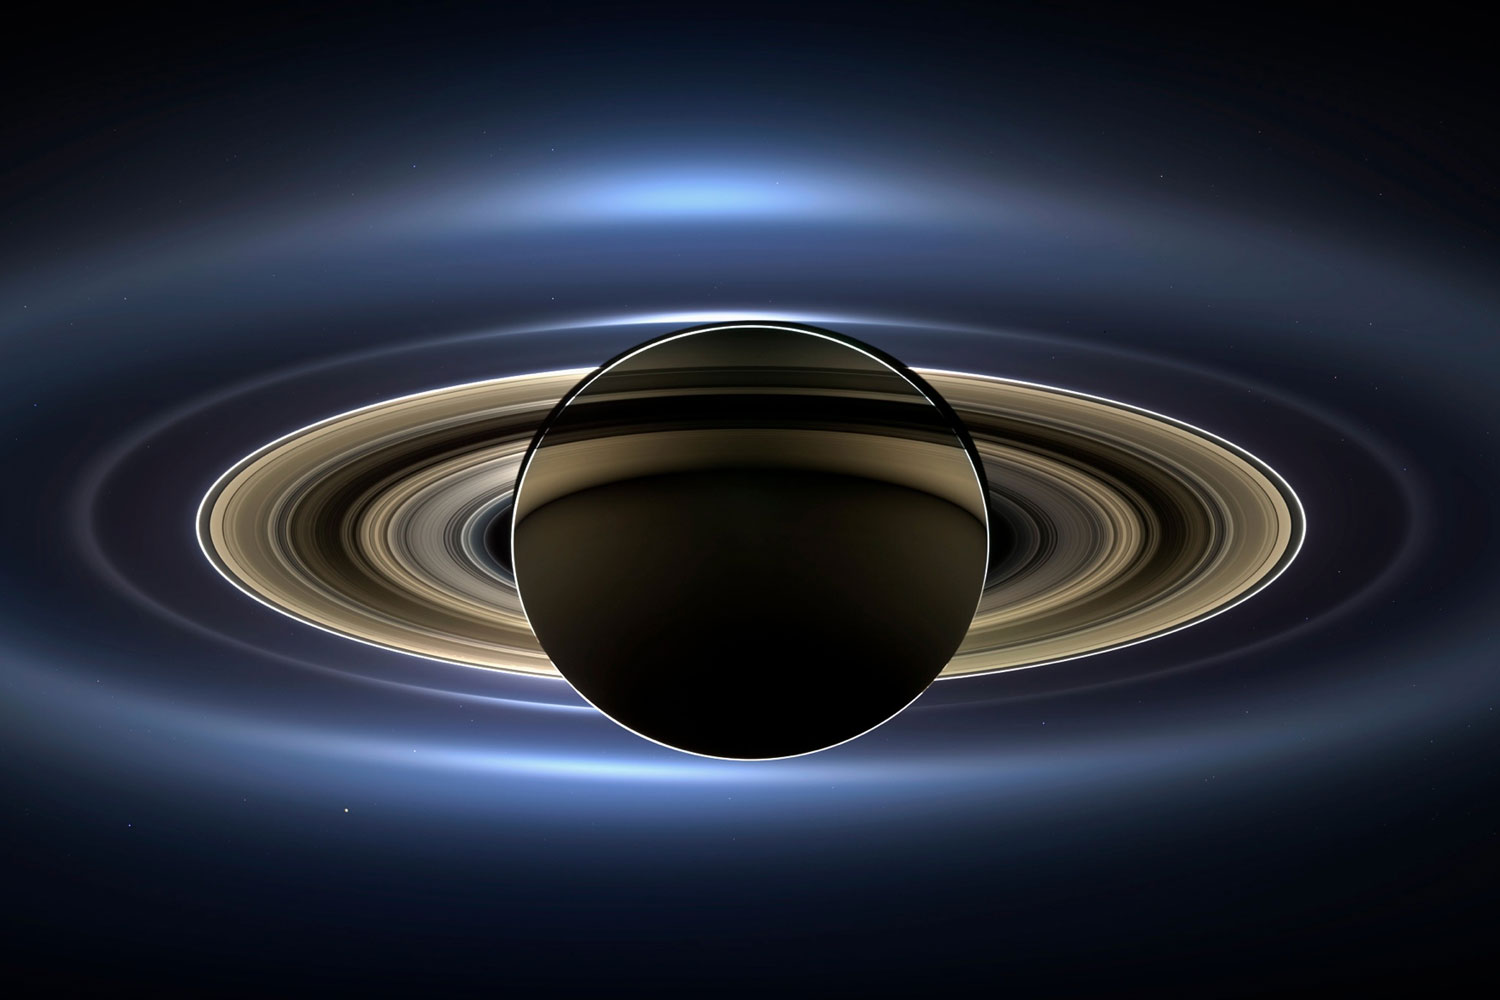 La NASA obtiene espectaculares imágenes de Saturno, con la Tierra en un lejano segundo plano